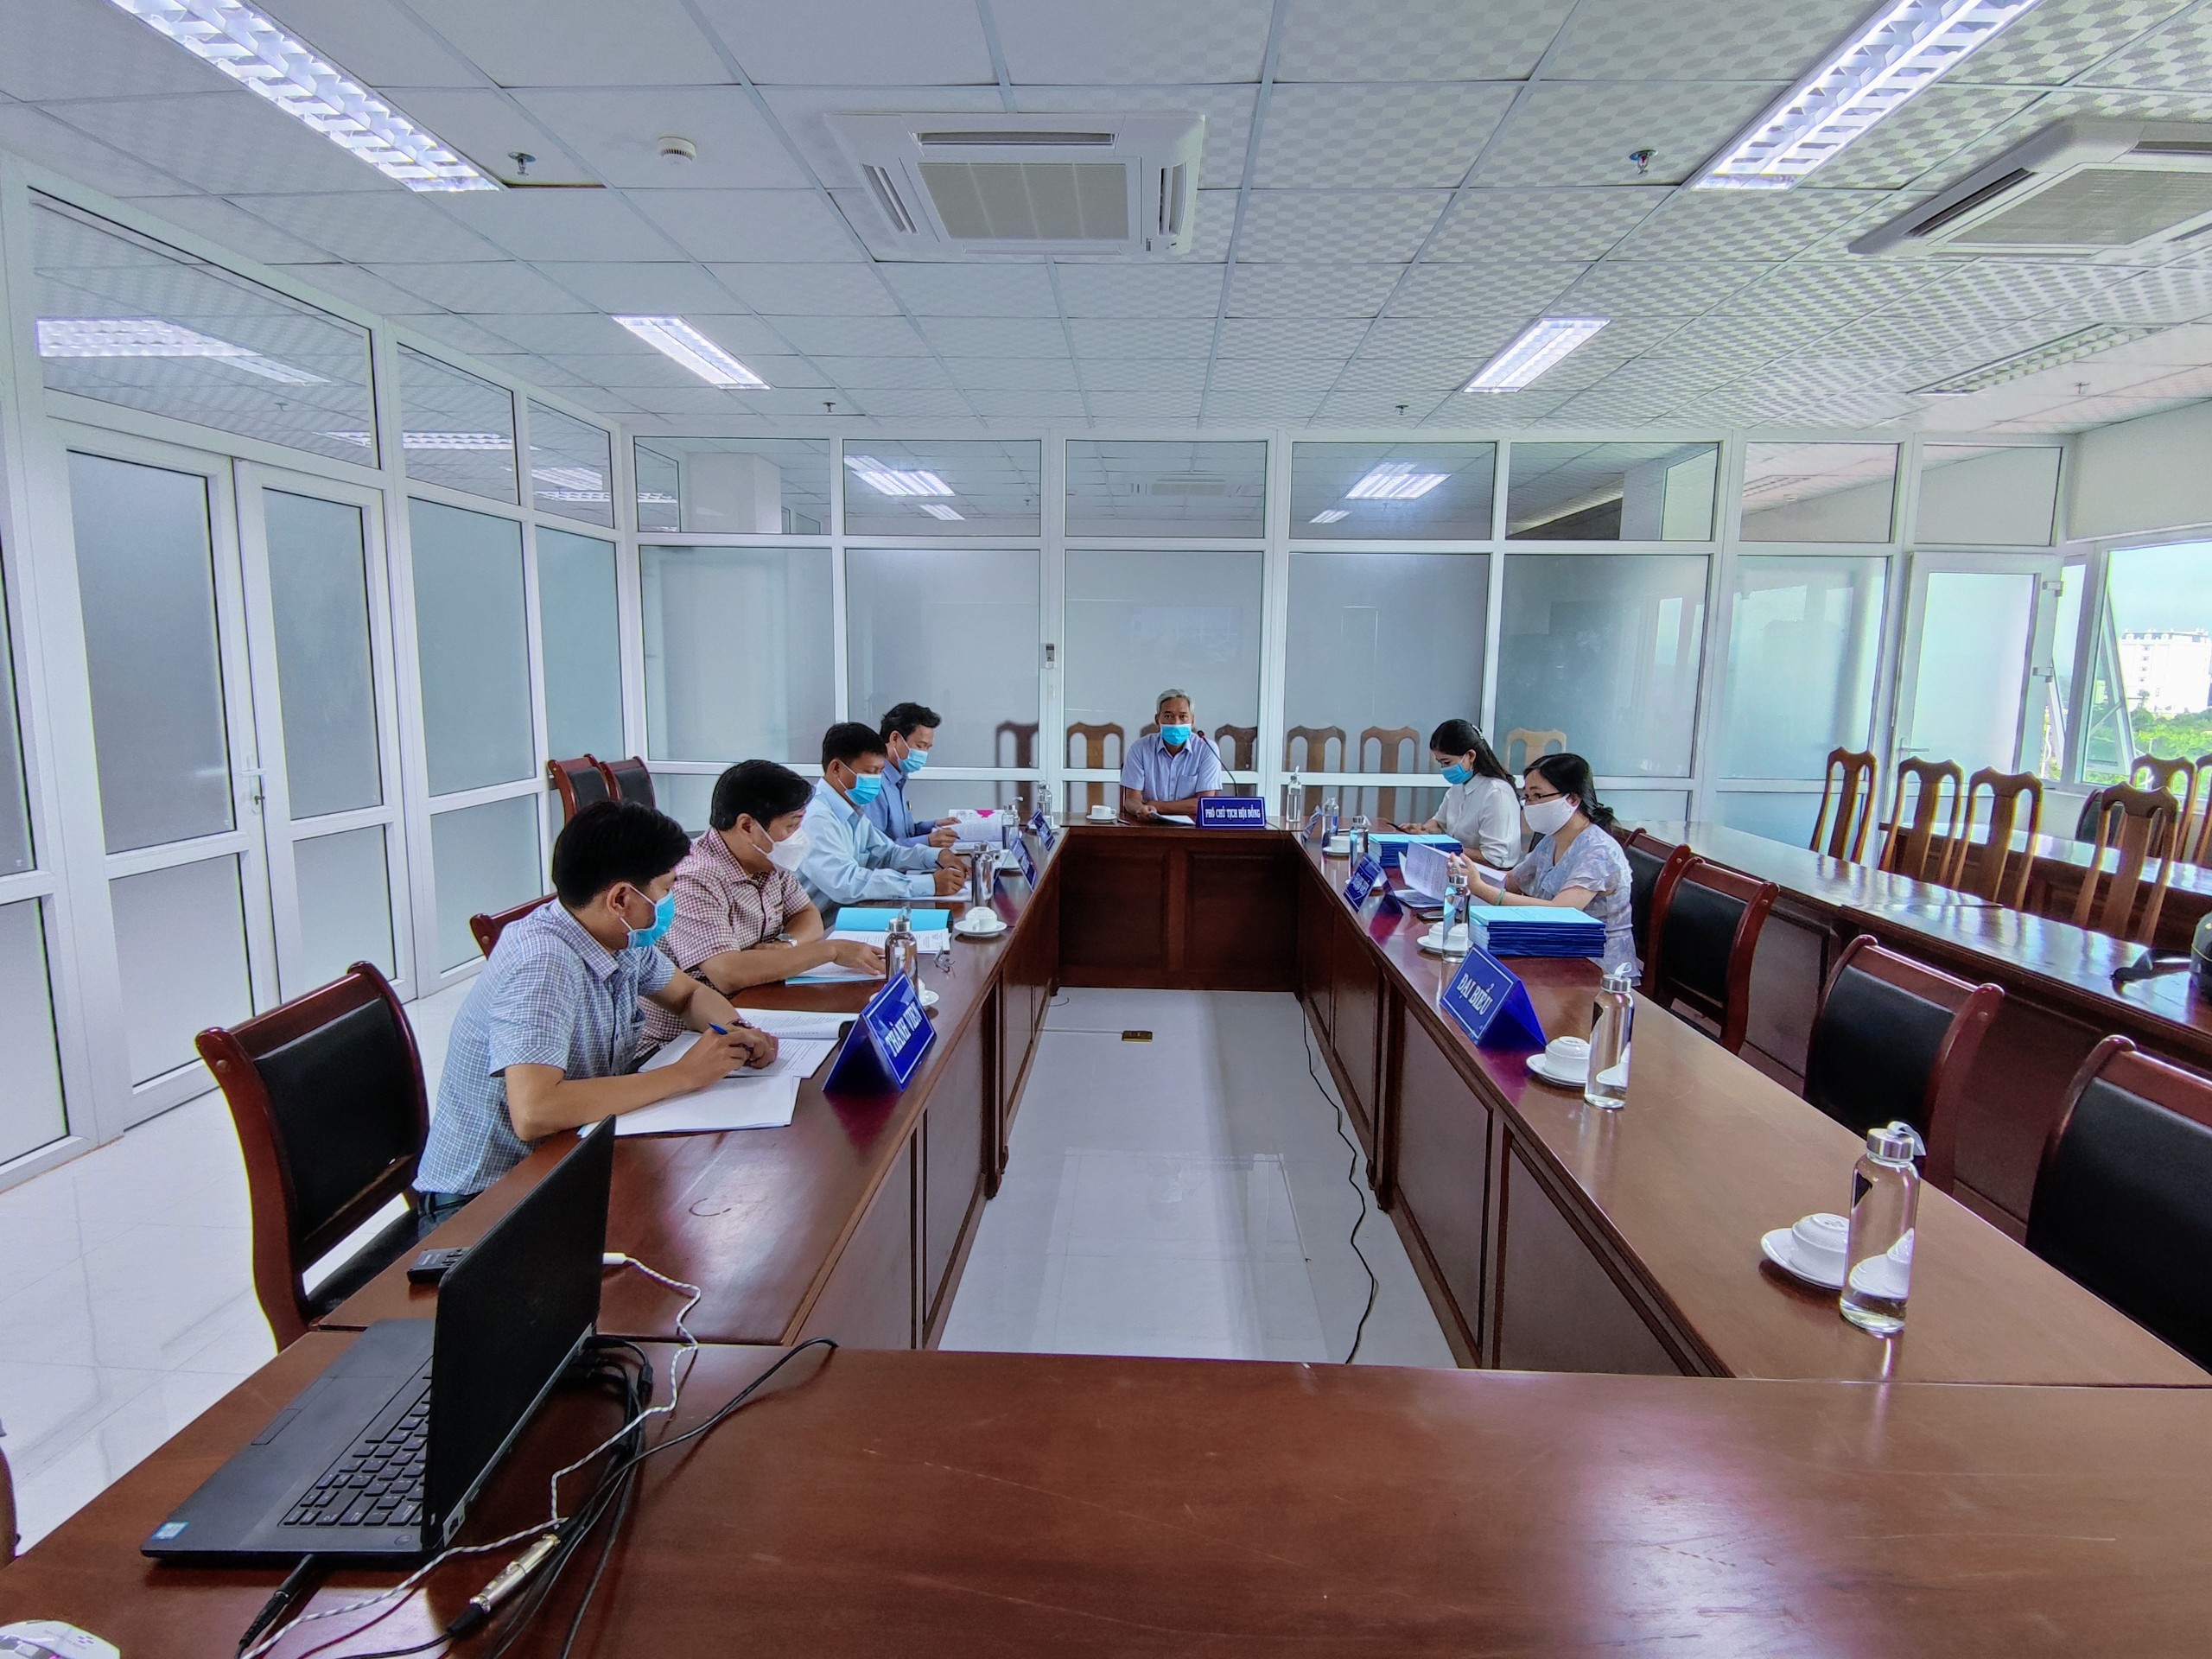 Hội đồng tư vấn đánh giá, nghiệm thu dự án “Xây dựng, quản lý và phát triển nhãn hiệu chứng nhận cho các sản phẩm dược liệu tỉnh Kon Tum”